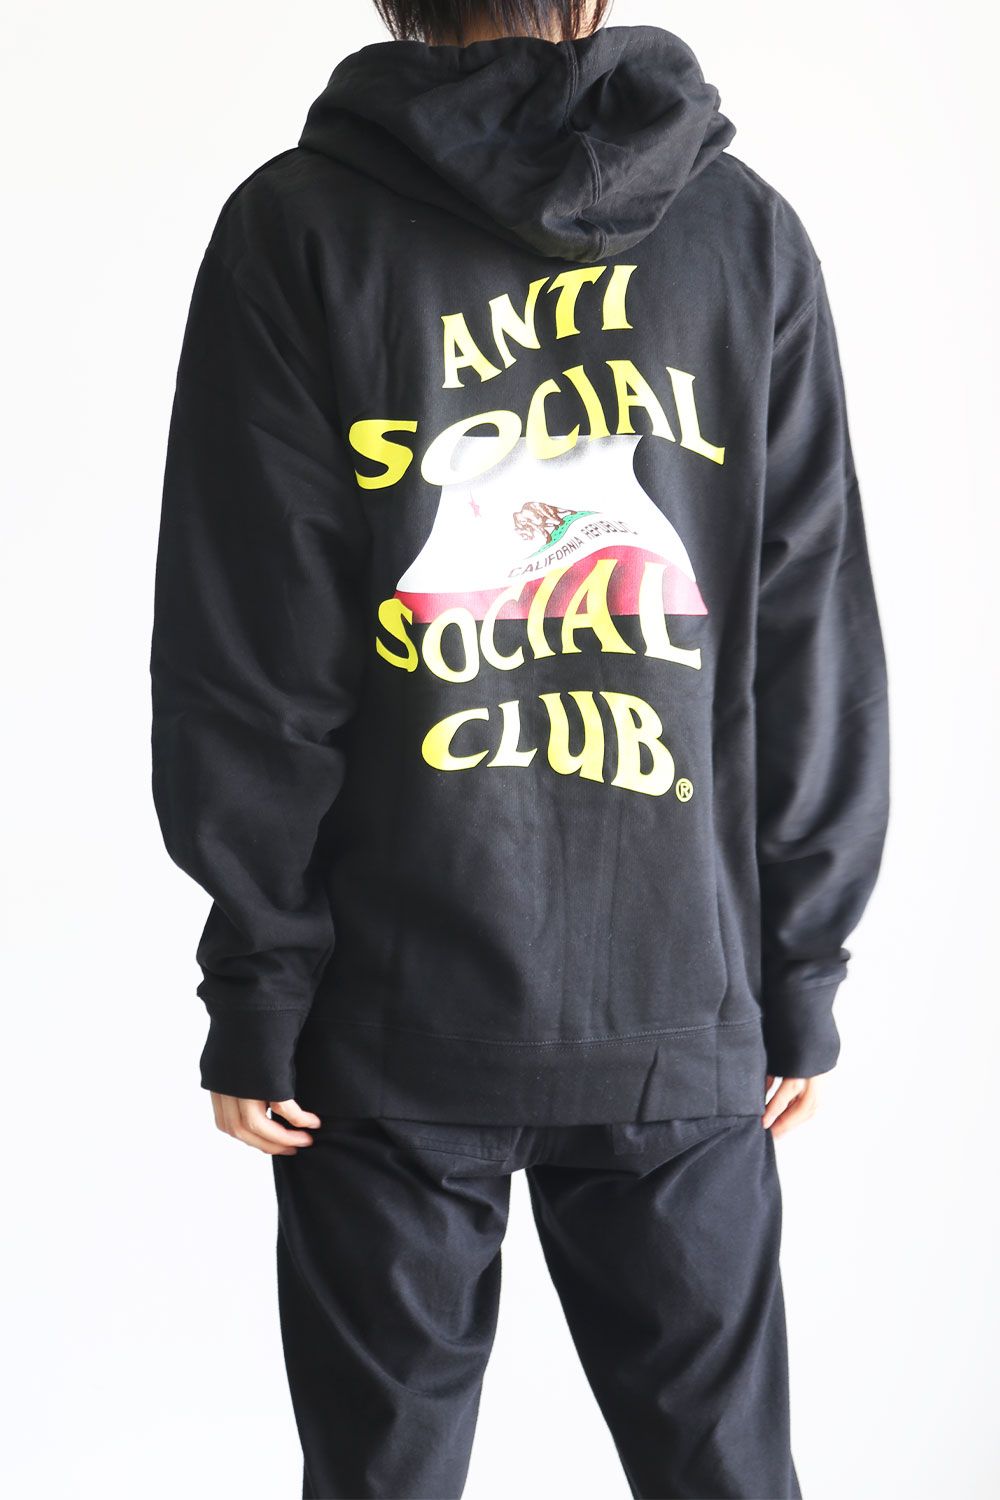 Anti social social club hoodie Mサイズ